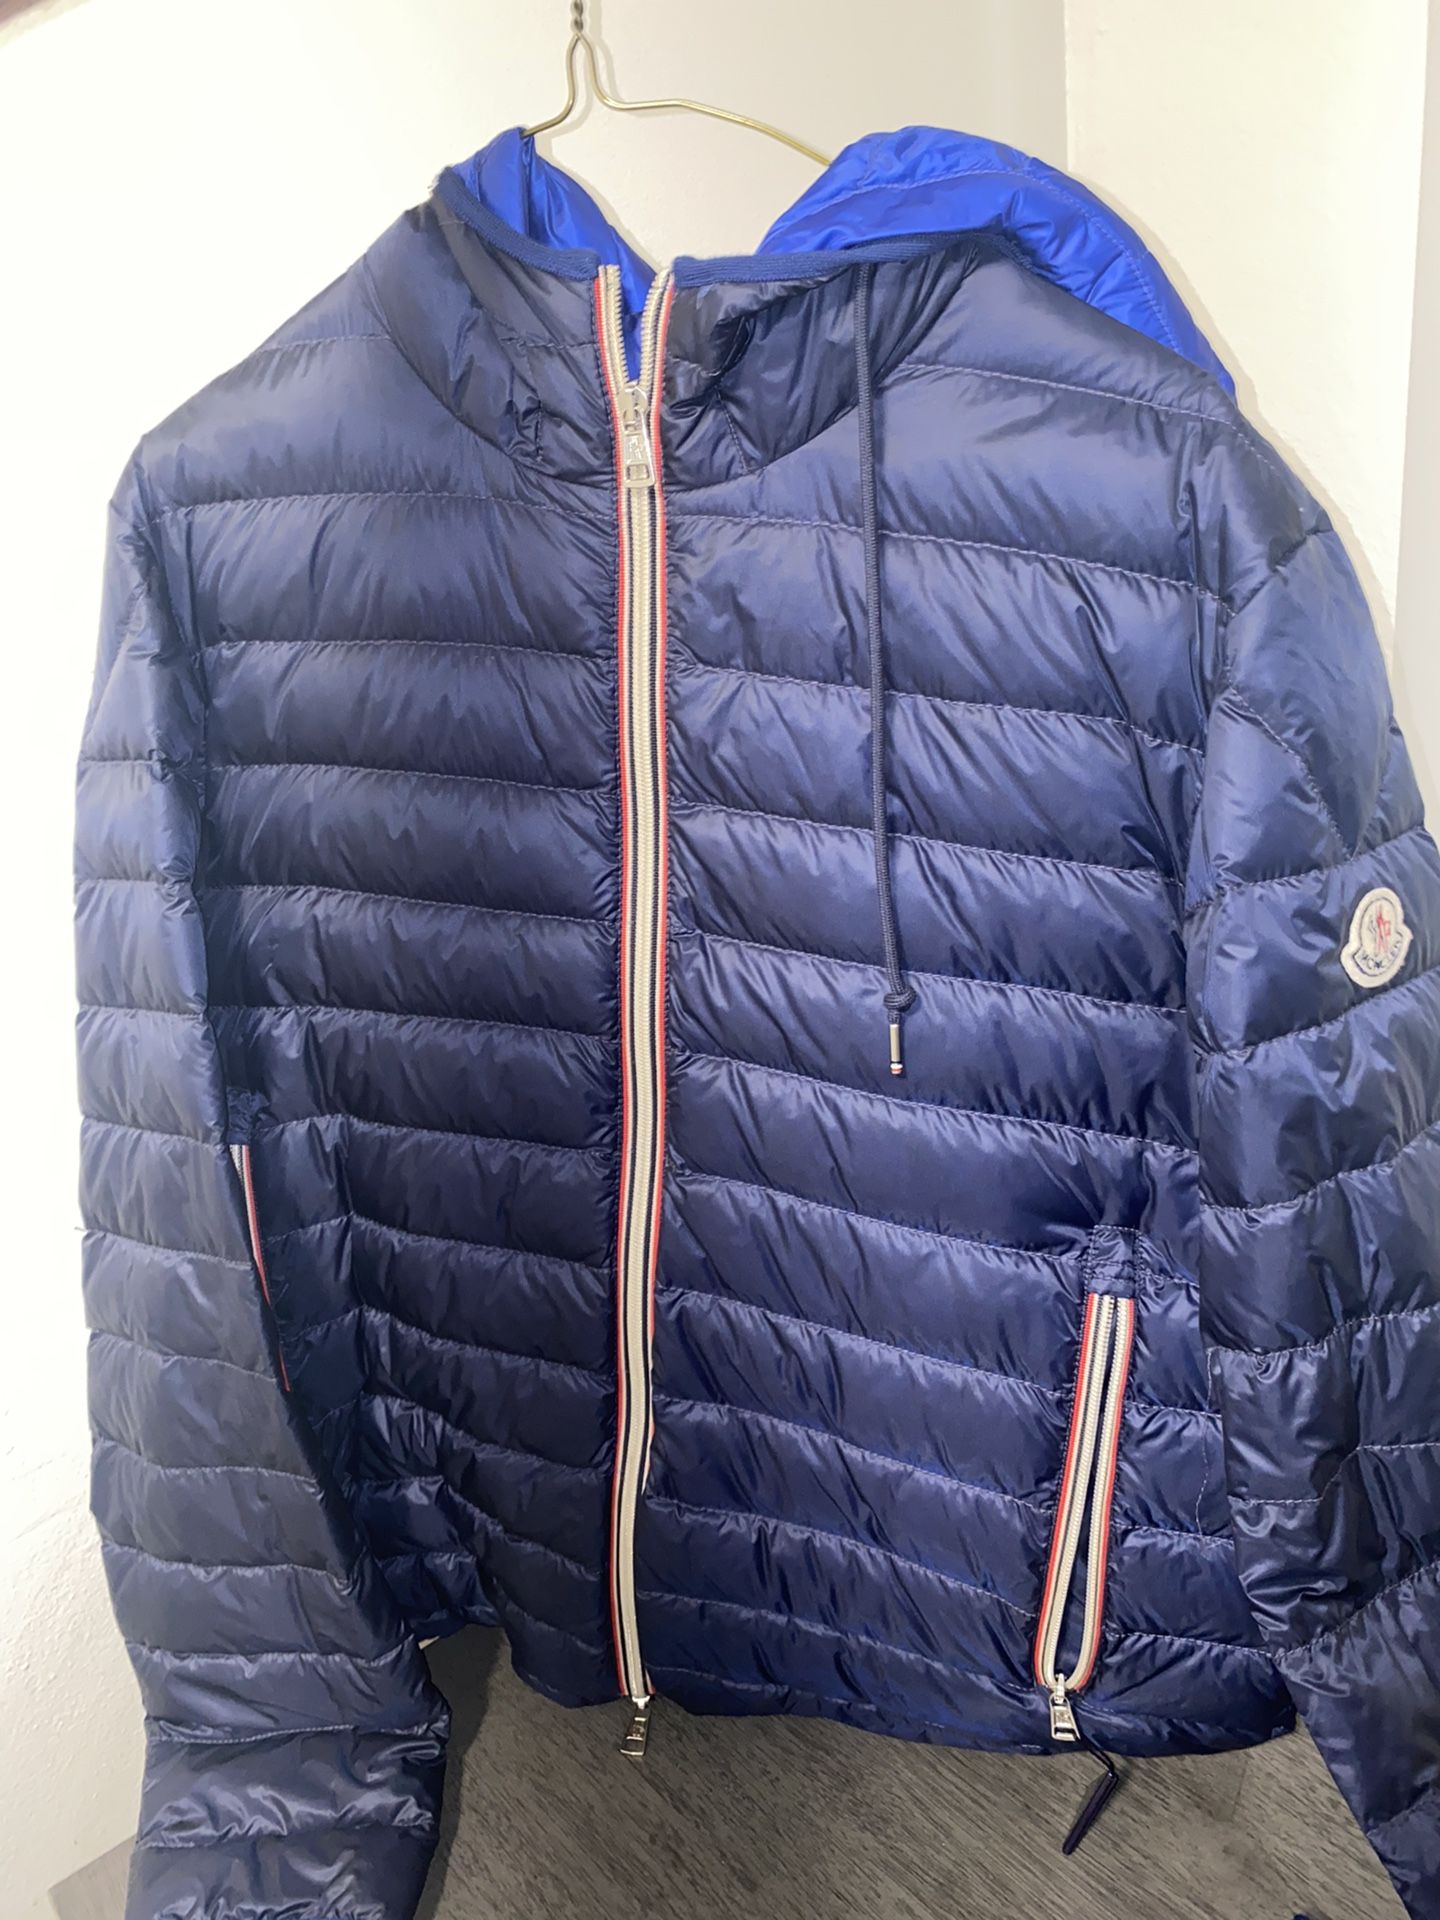 Moncler Puff Jacket Size 3 Medium/Large